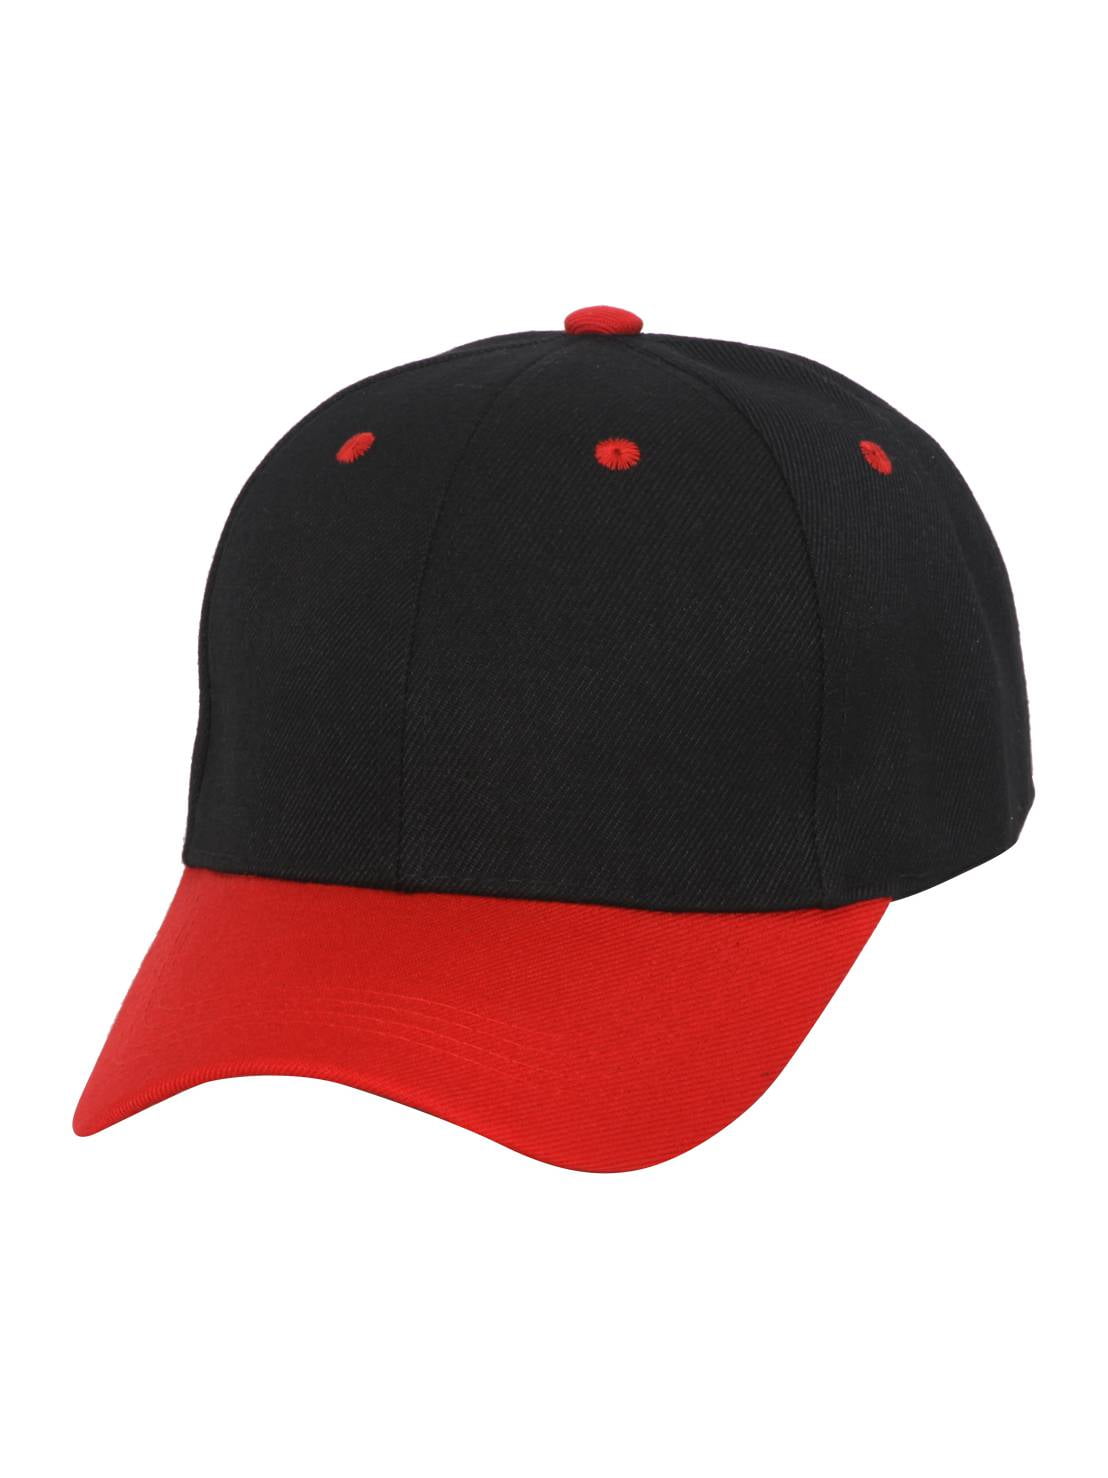 Two Tone Plain Black/Red Snapback Cap 